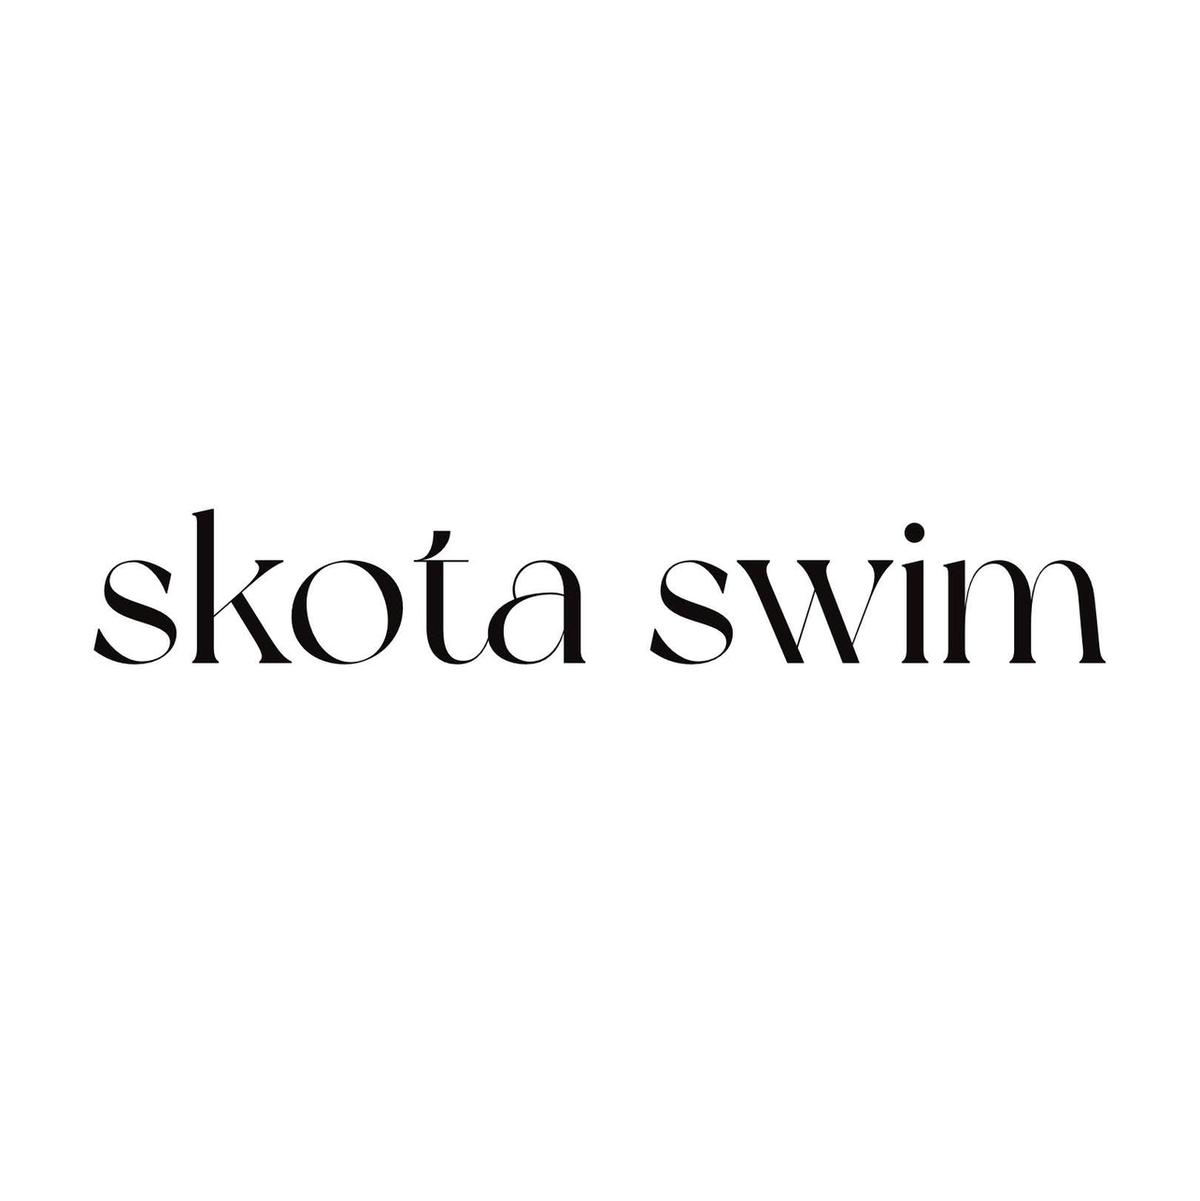 Skota Swim's images